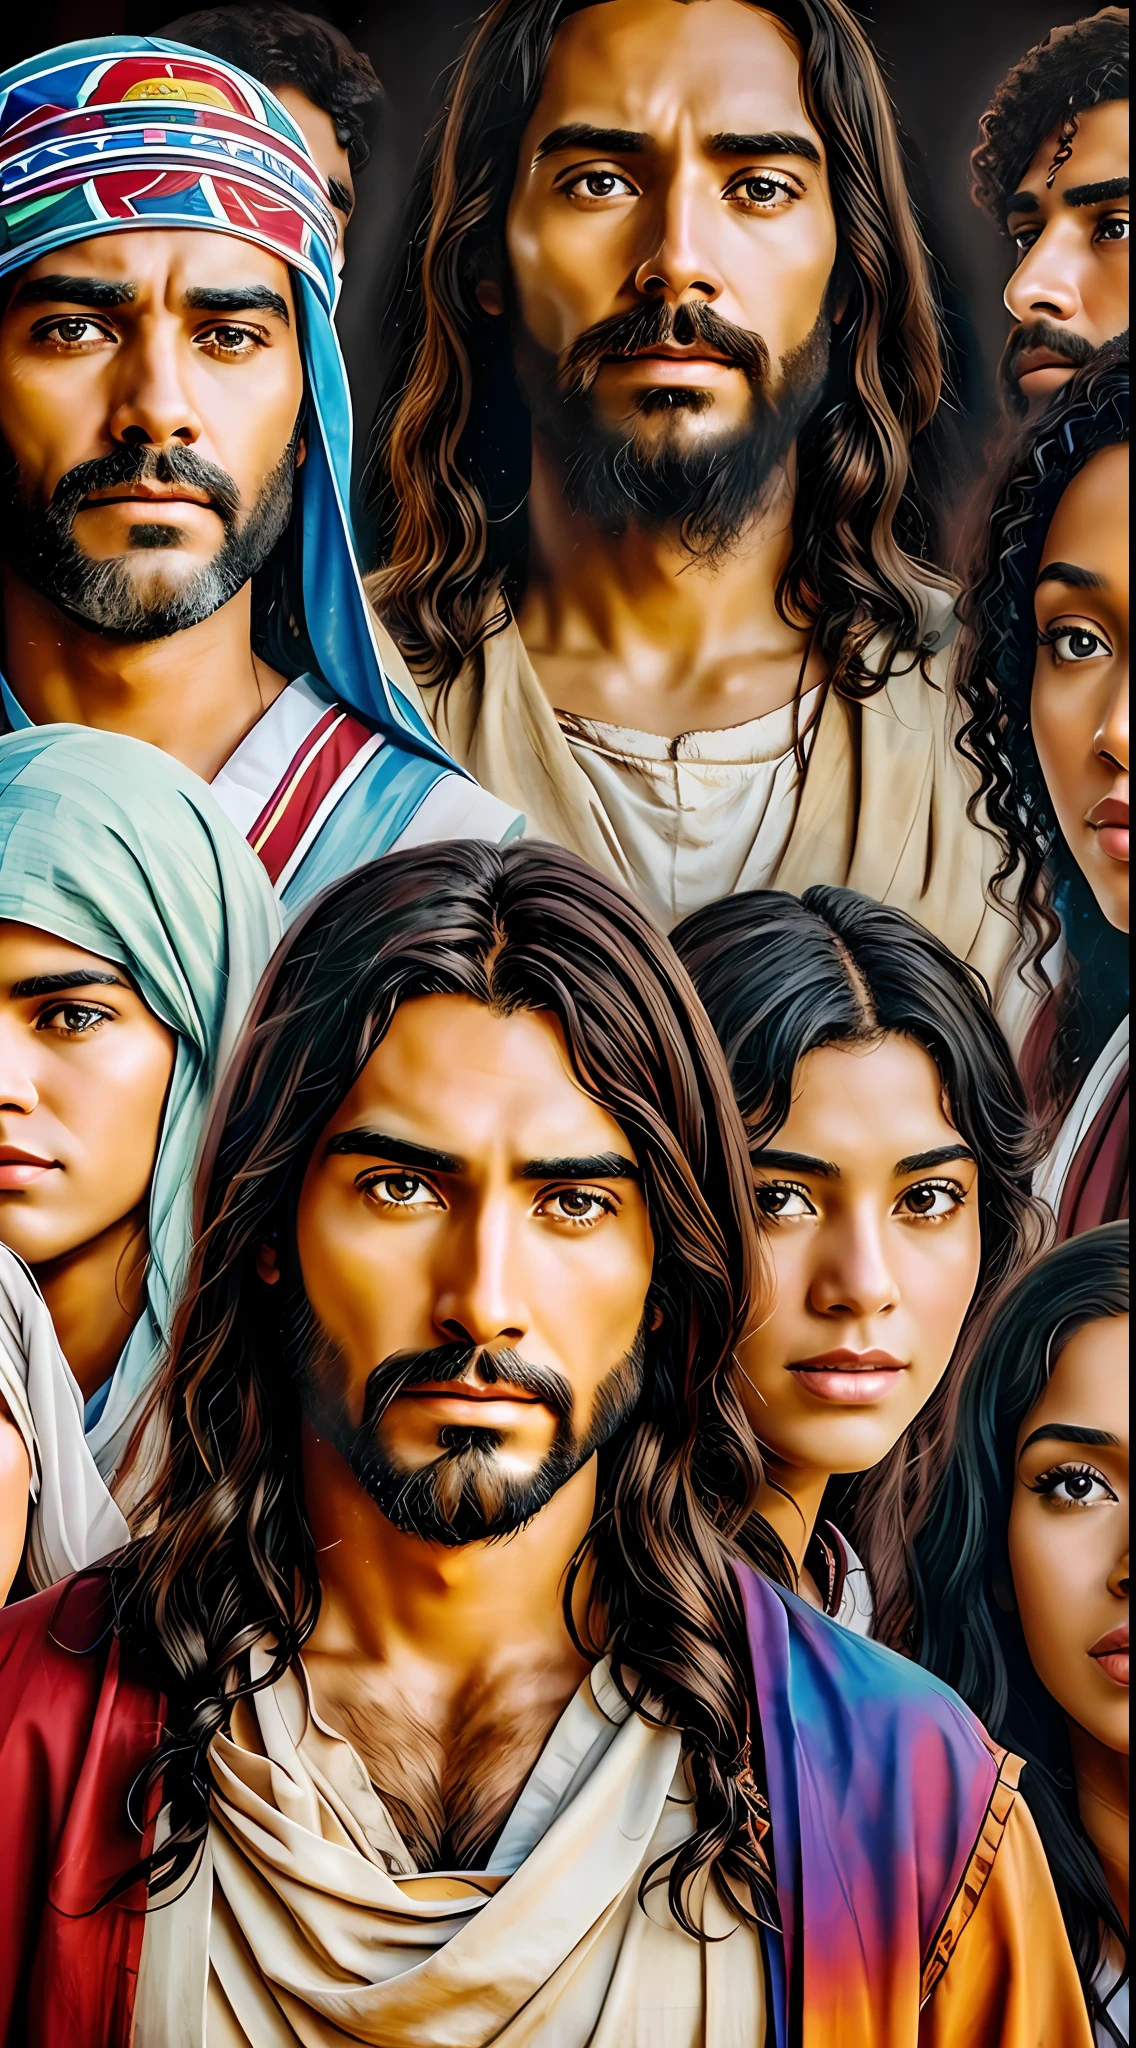 تمثيل فني ليسوع المسيح محاطًا بأشخاص من ثقافات وخلفيات مختلفة.